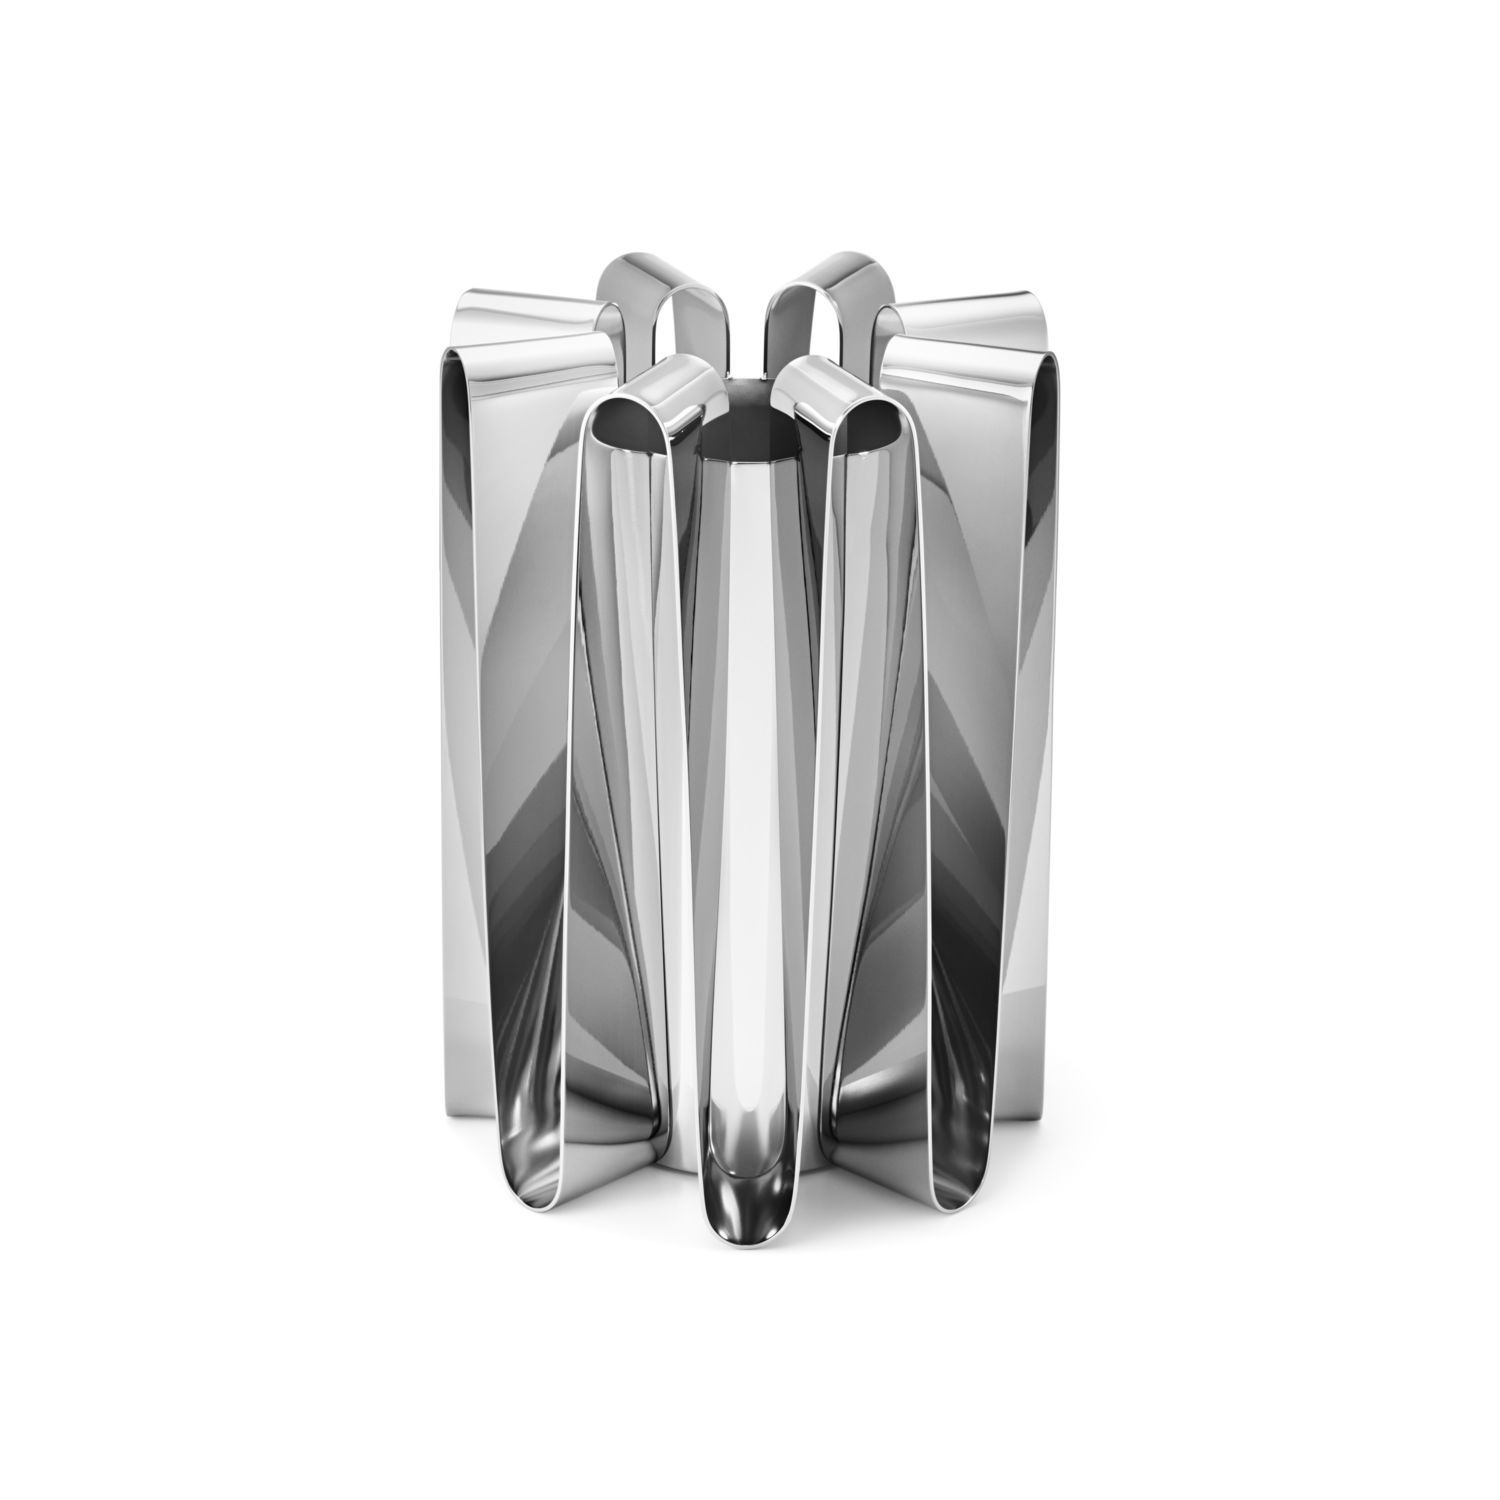 Vase design en acier inoxydable poli brillant H22cm